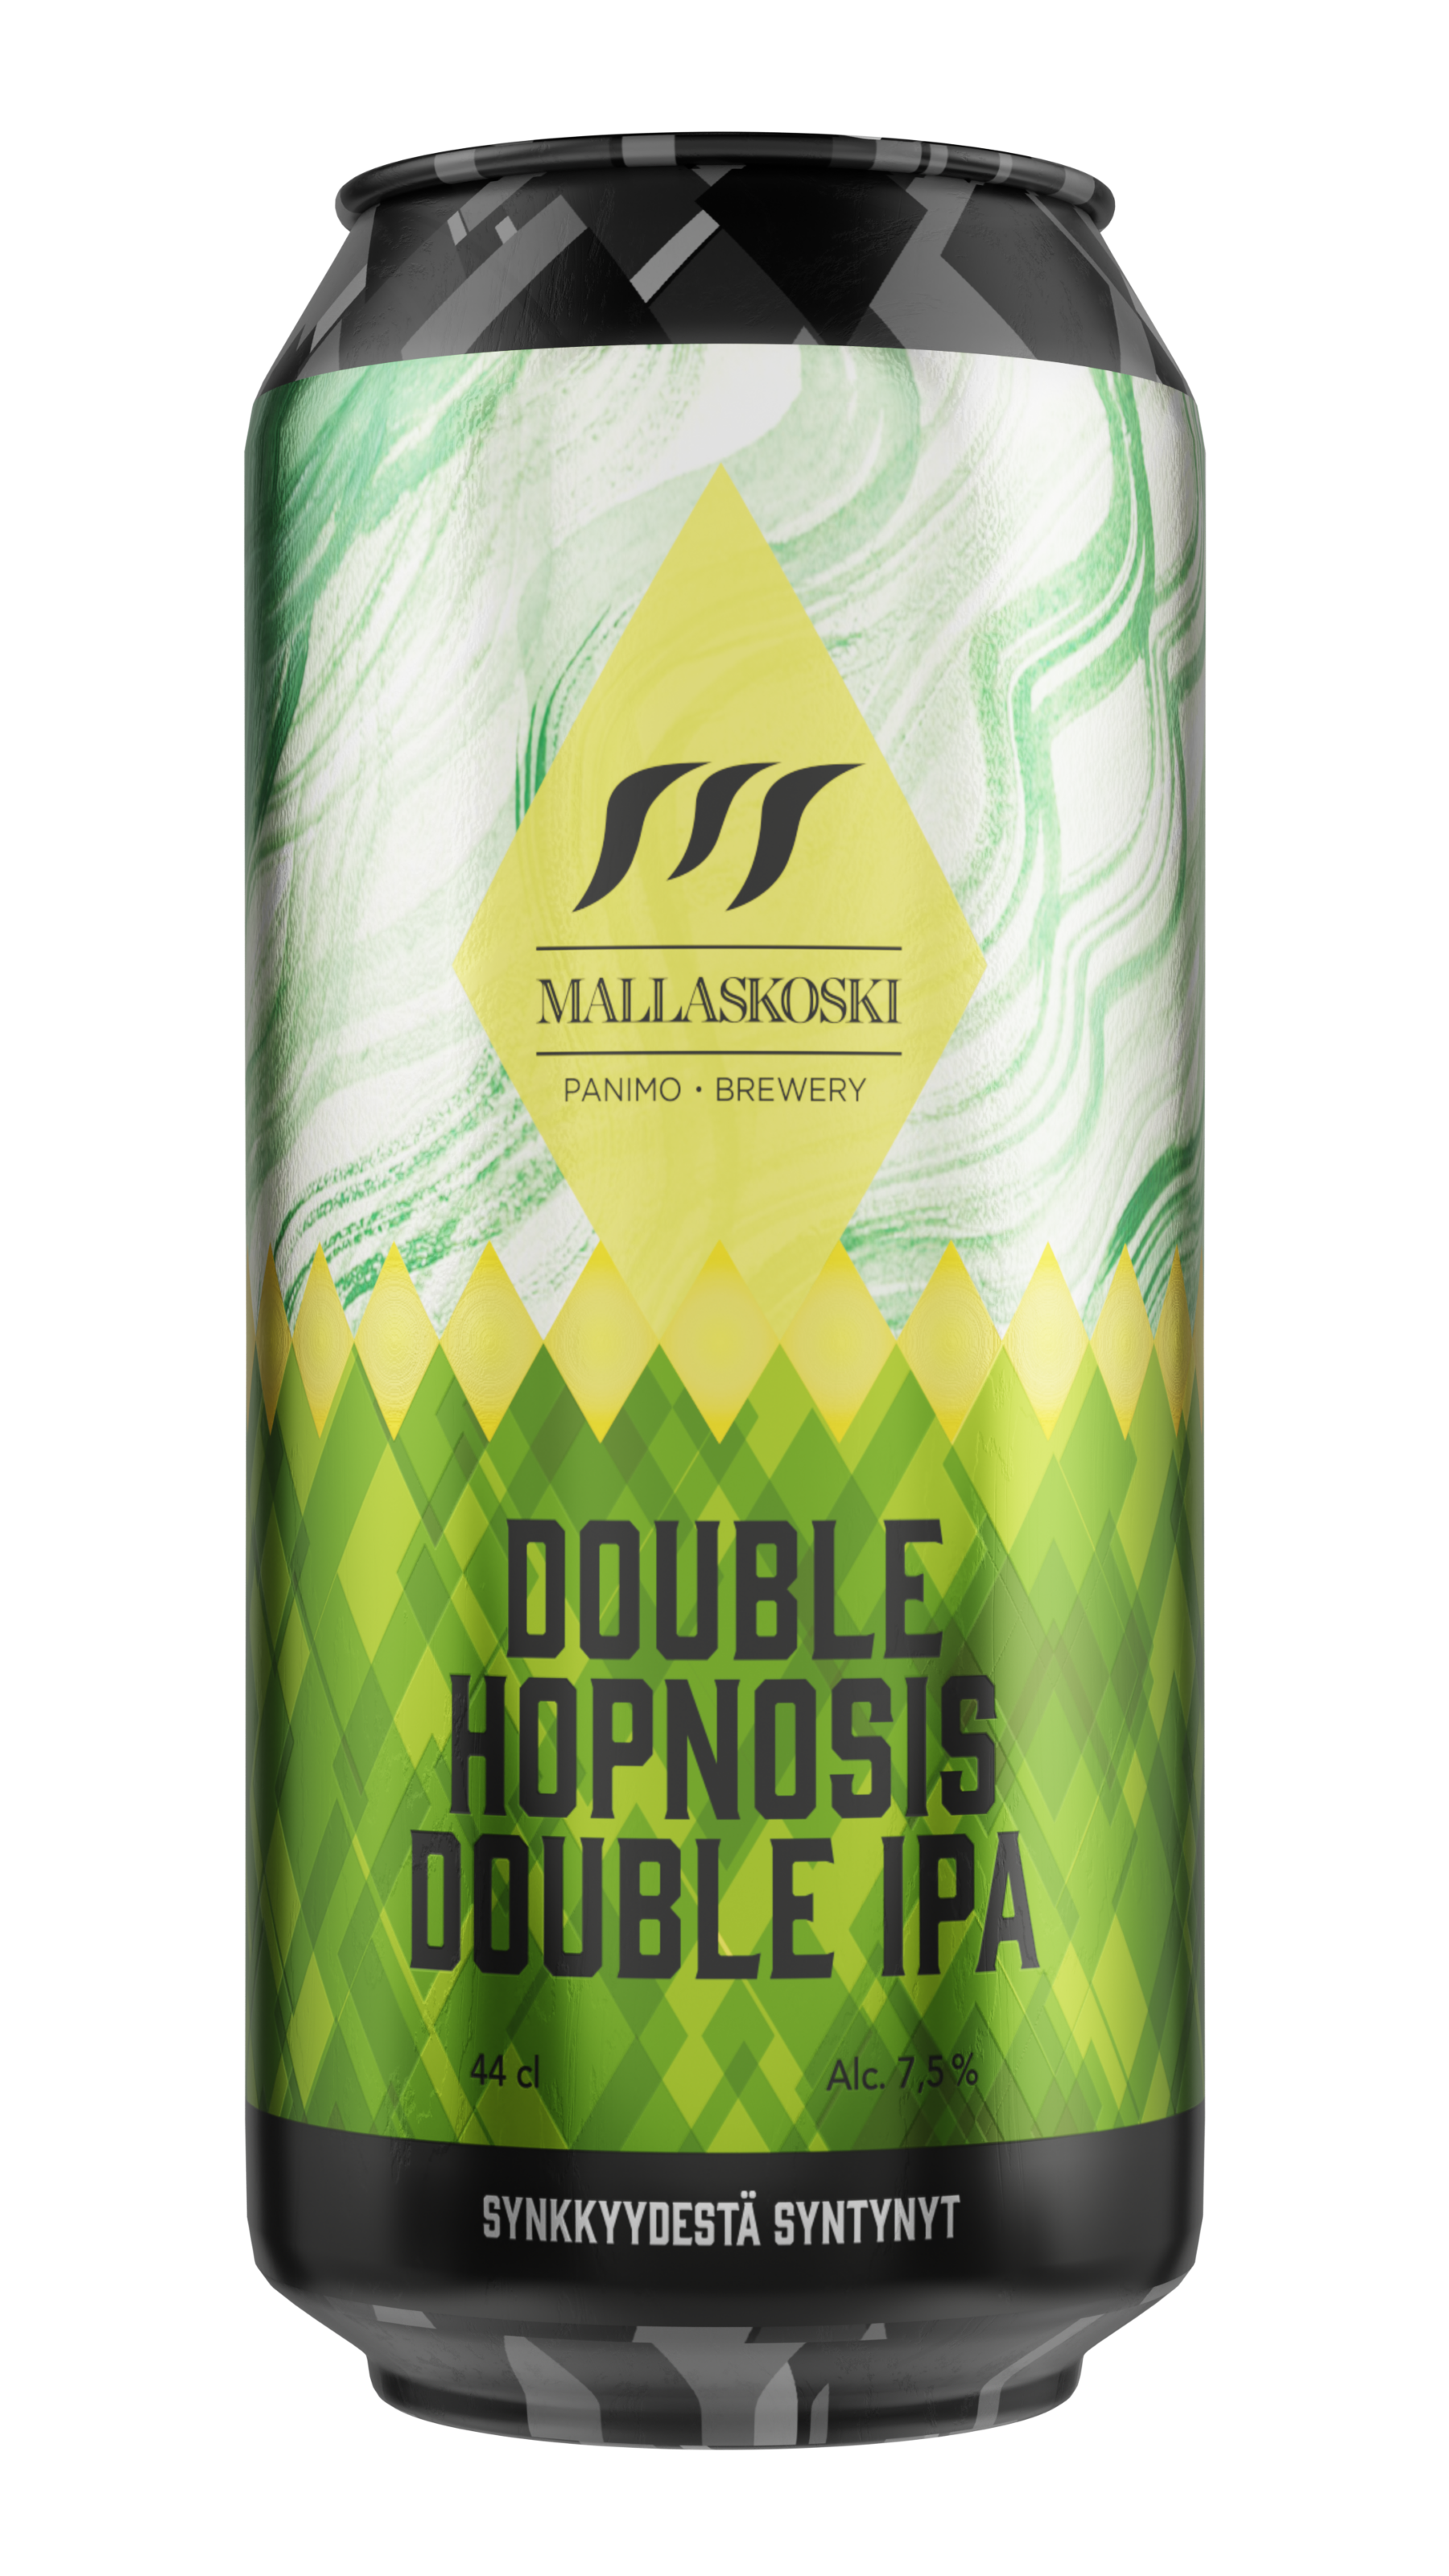 Double Hopnosis Double IPA